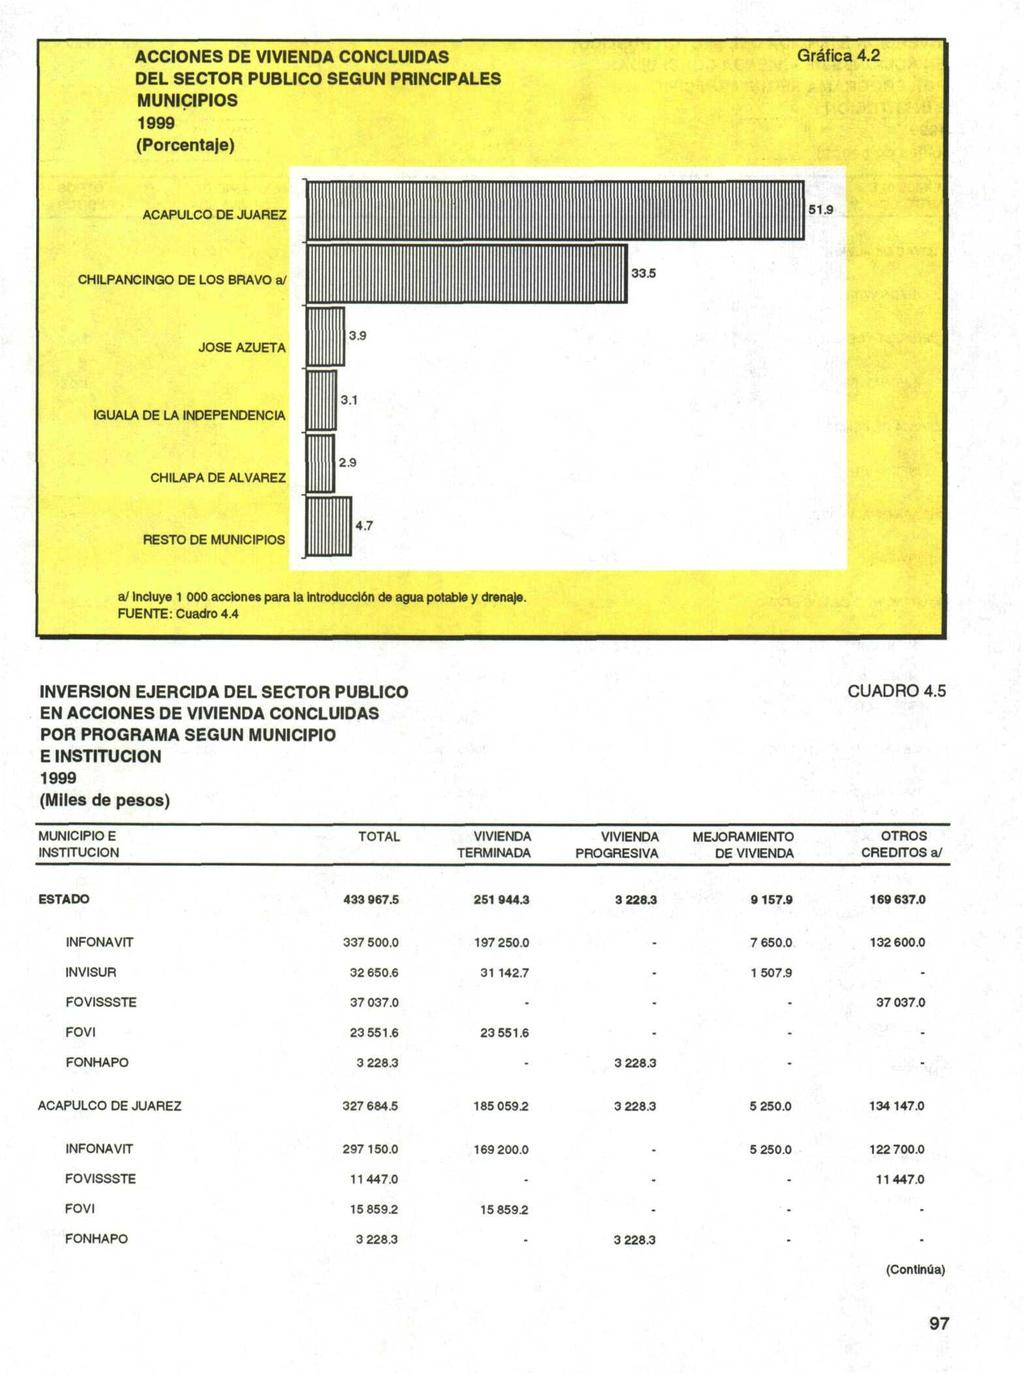 ACCIONES DE VIVIEA CONCLUIDAS DEL SECTOR PUBLICO SEGUN PRINCIPALES MUNICIPIOS 999 (Porcentaje) Grafica. ACAPULCO DE JUAREZ 5.9 CHILPANCINGO DE LOS BRAVO a/.5 JOSE AZUETA.9 KUALA DE LA IEPEENCE.